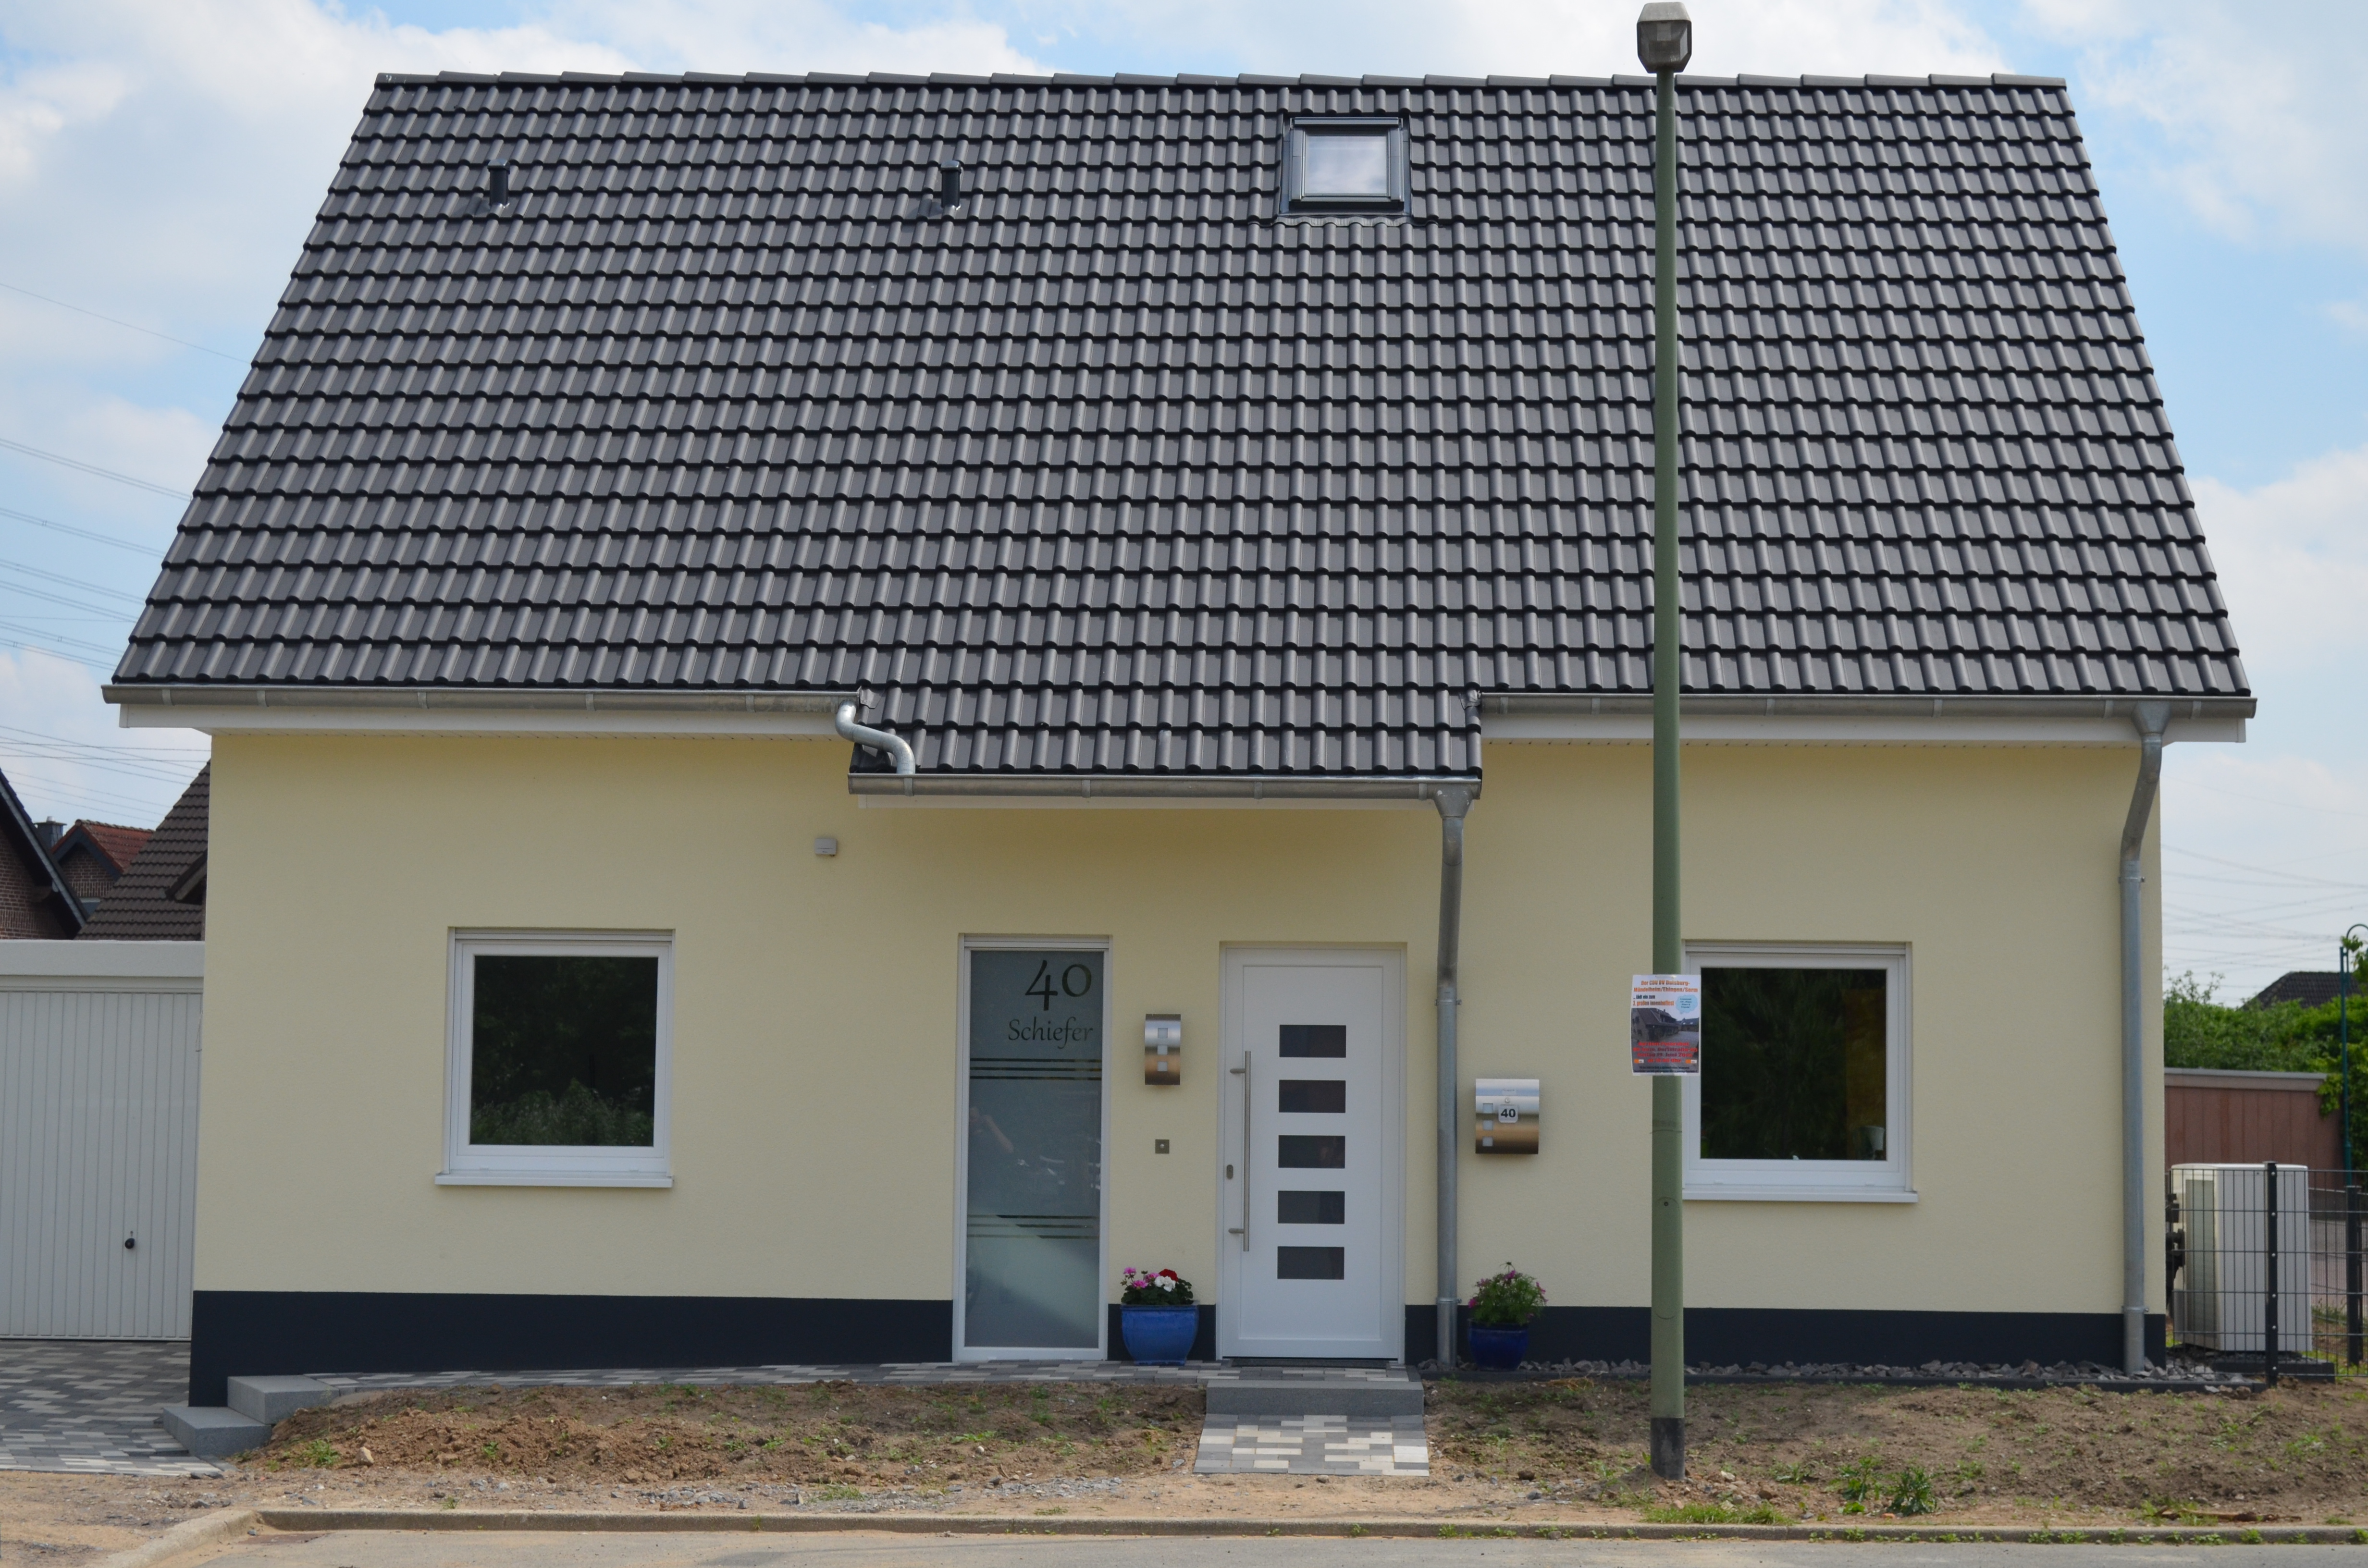 Schiefer Neubau Haus bauen Referenz energieeffizient modern